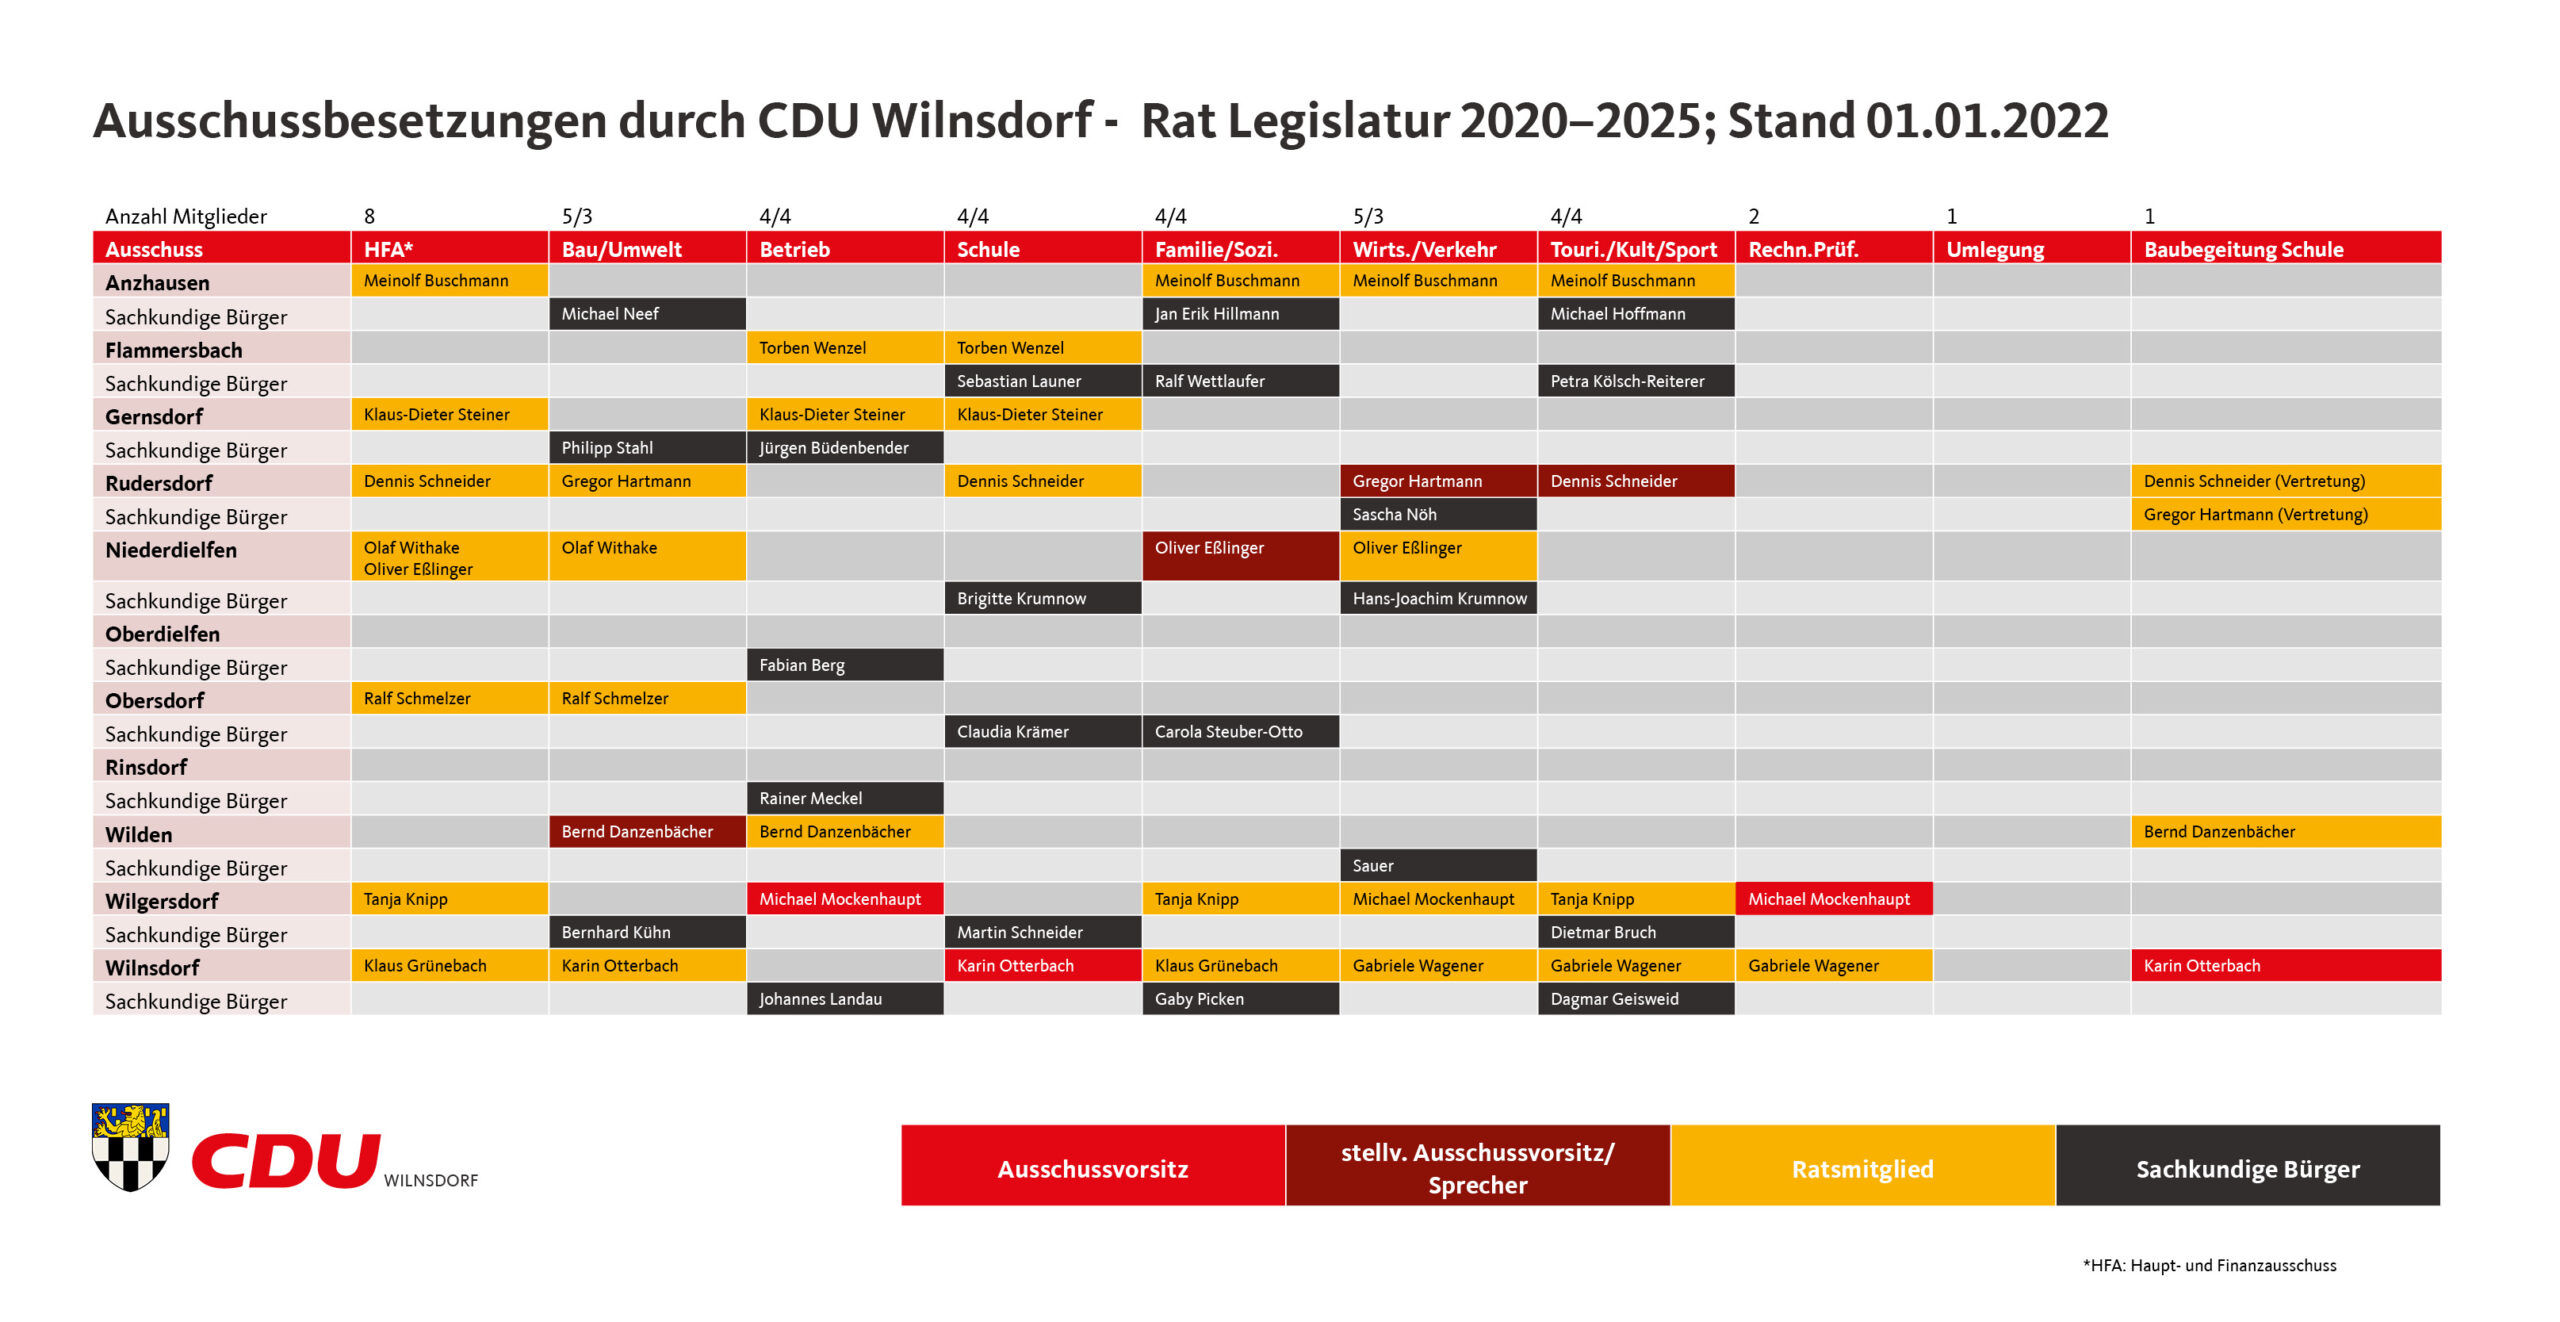 Ausschussbesetzung CDU Wilnsdorf 2022